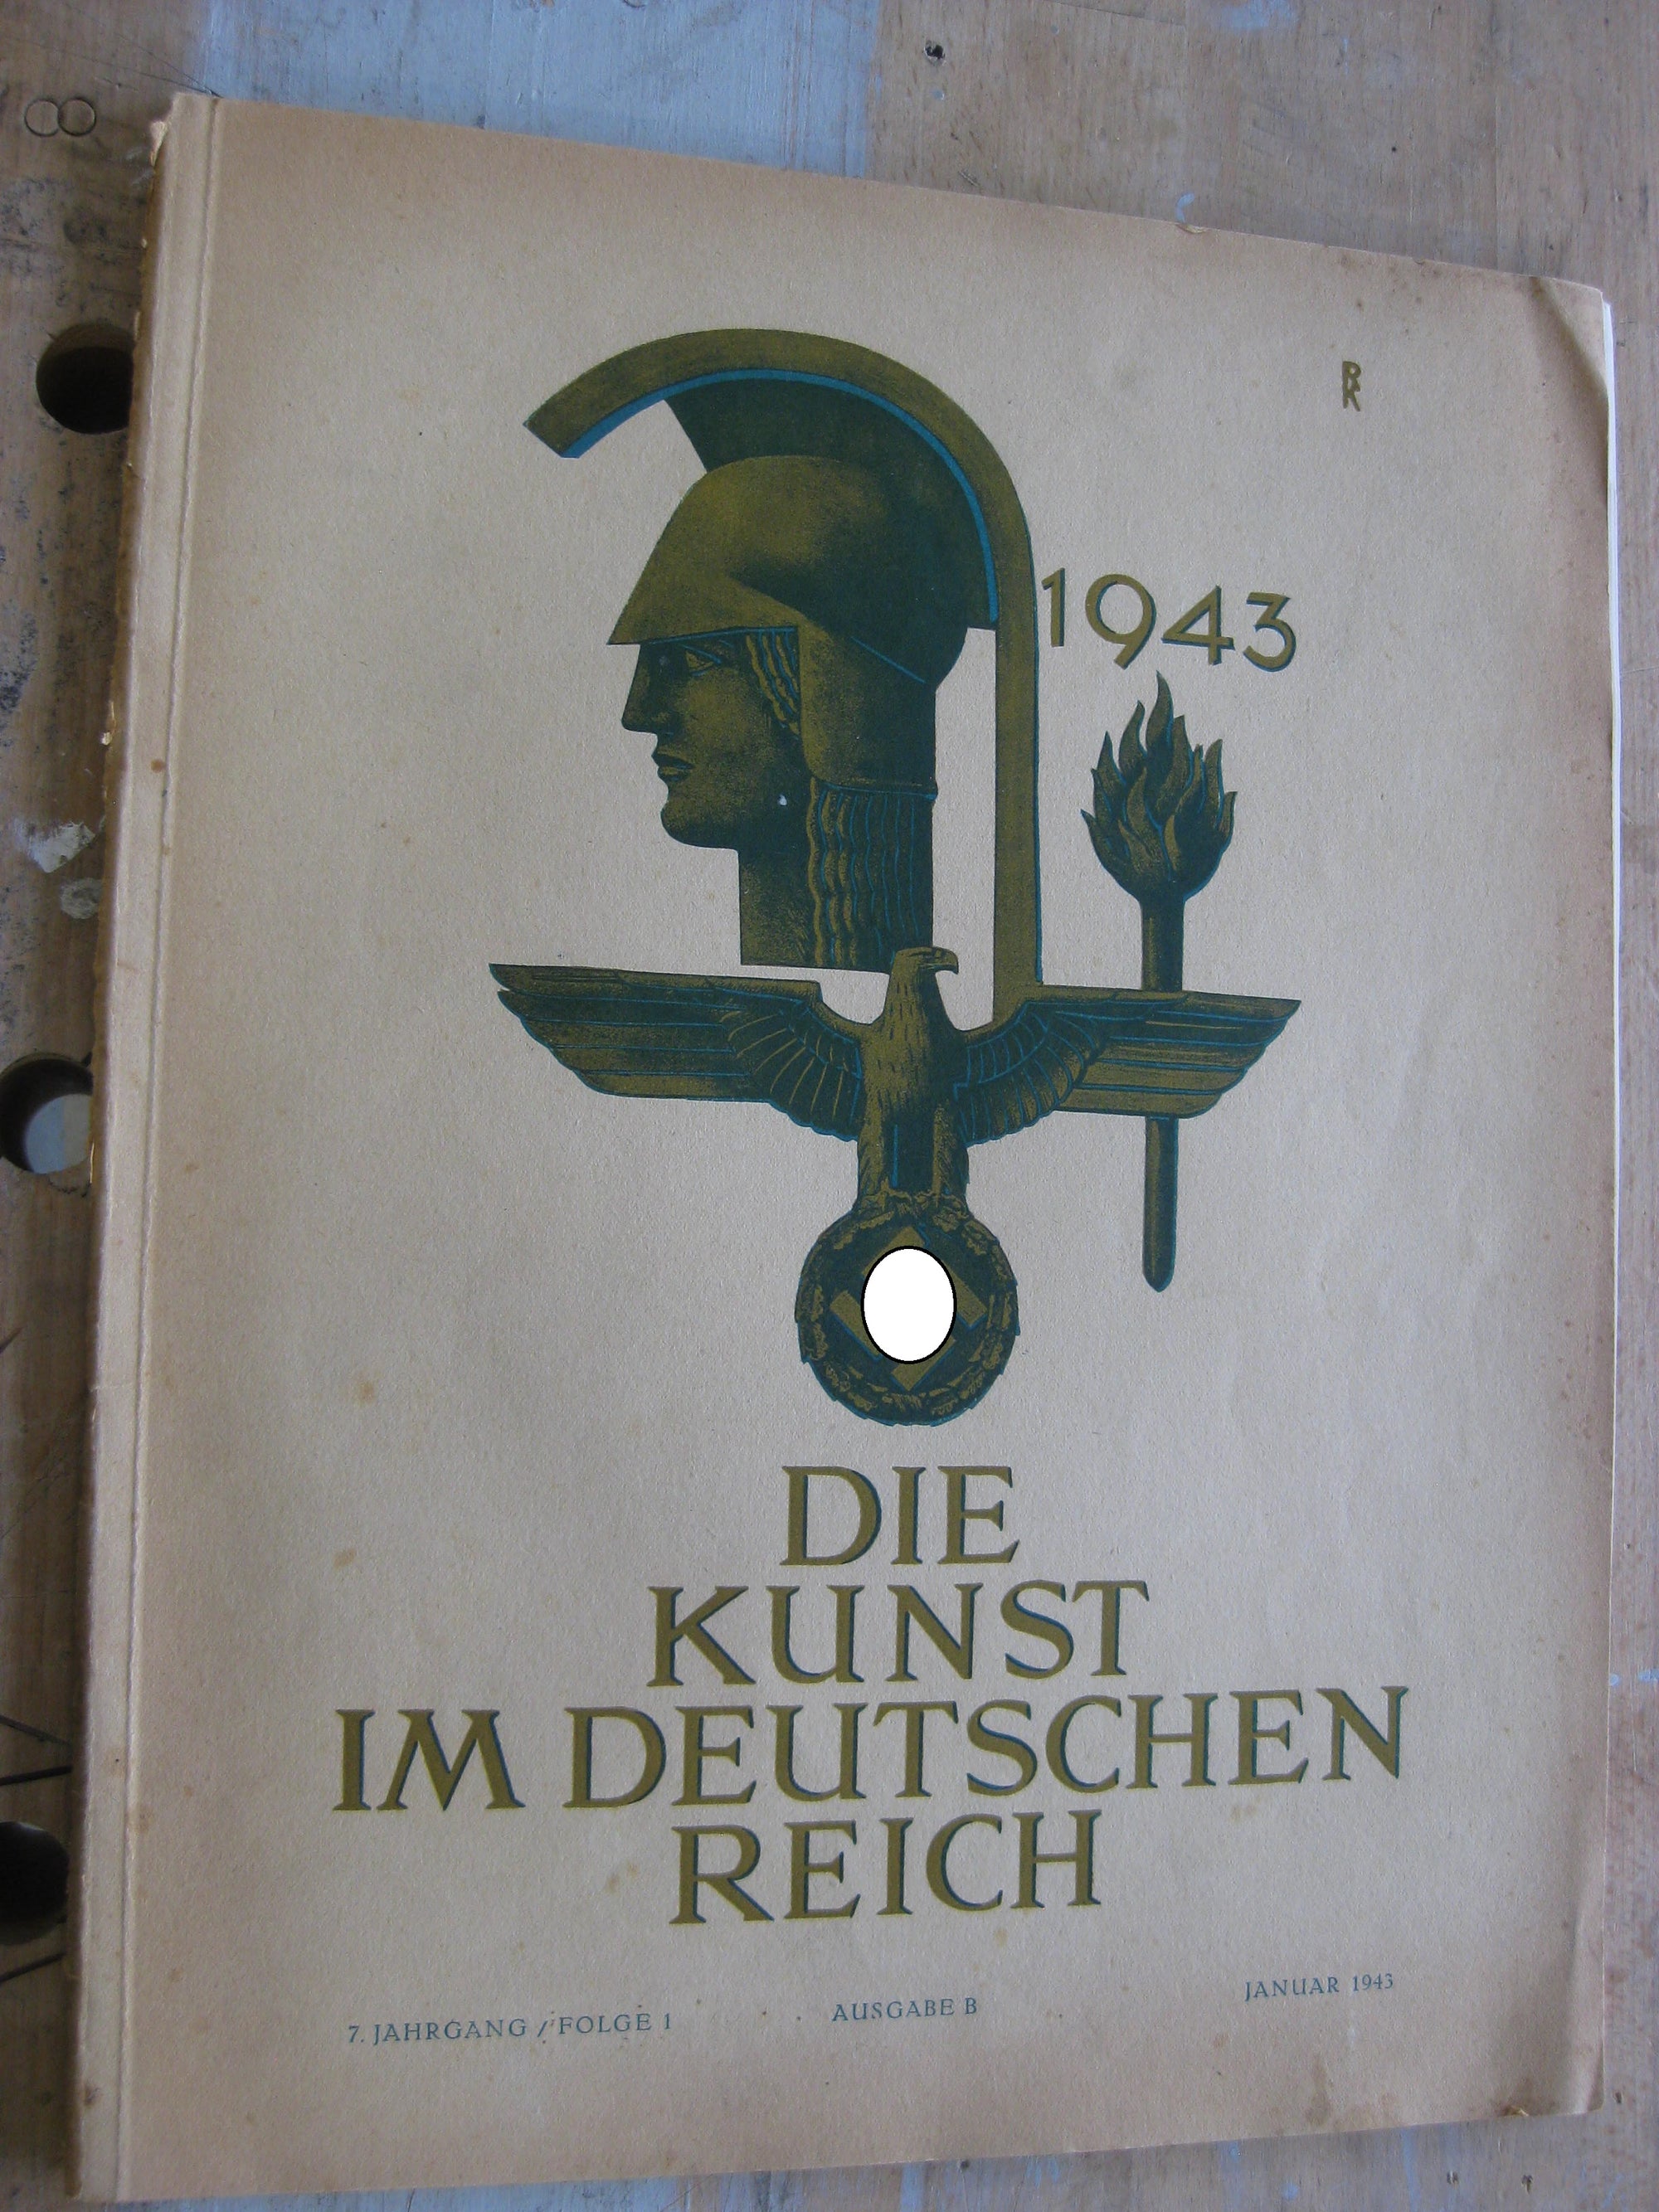 Die Kunst im deutschen Reich 1943